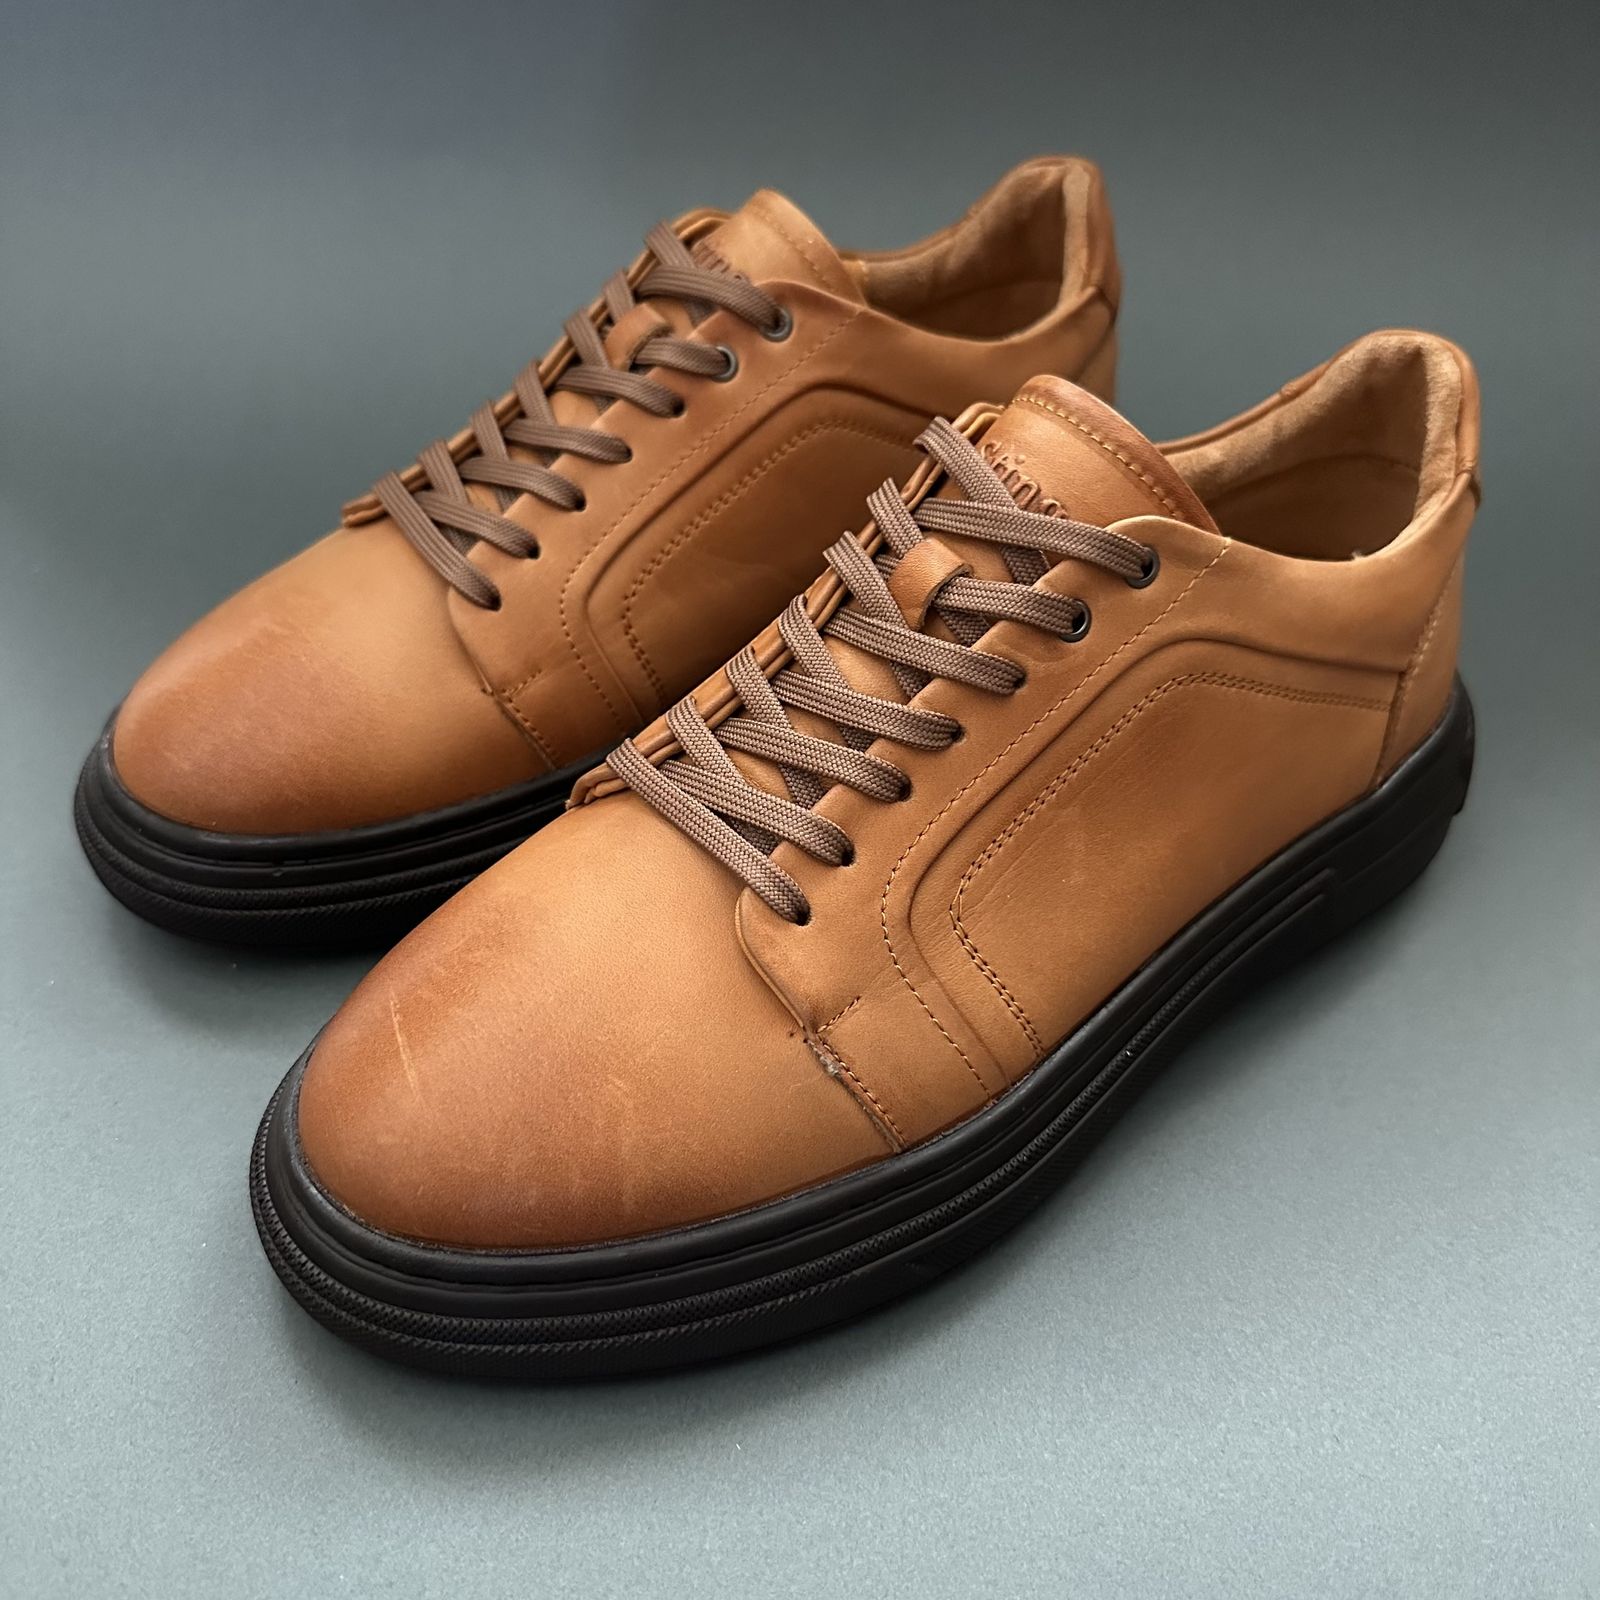 کفش روزمره مردانه استینگ مدل S211 -  - 2